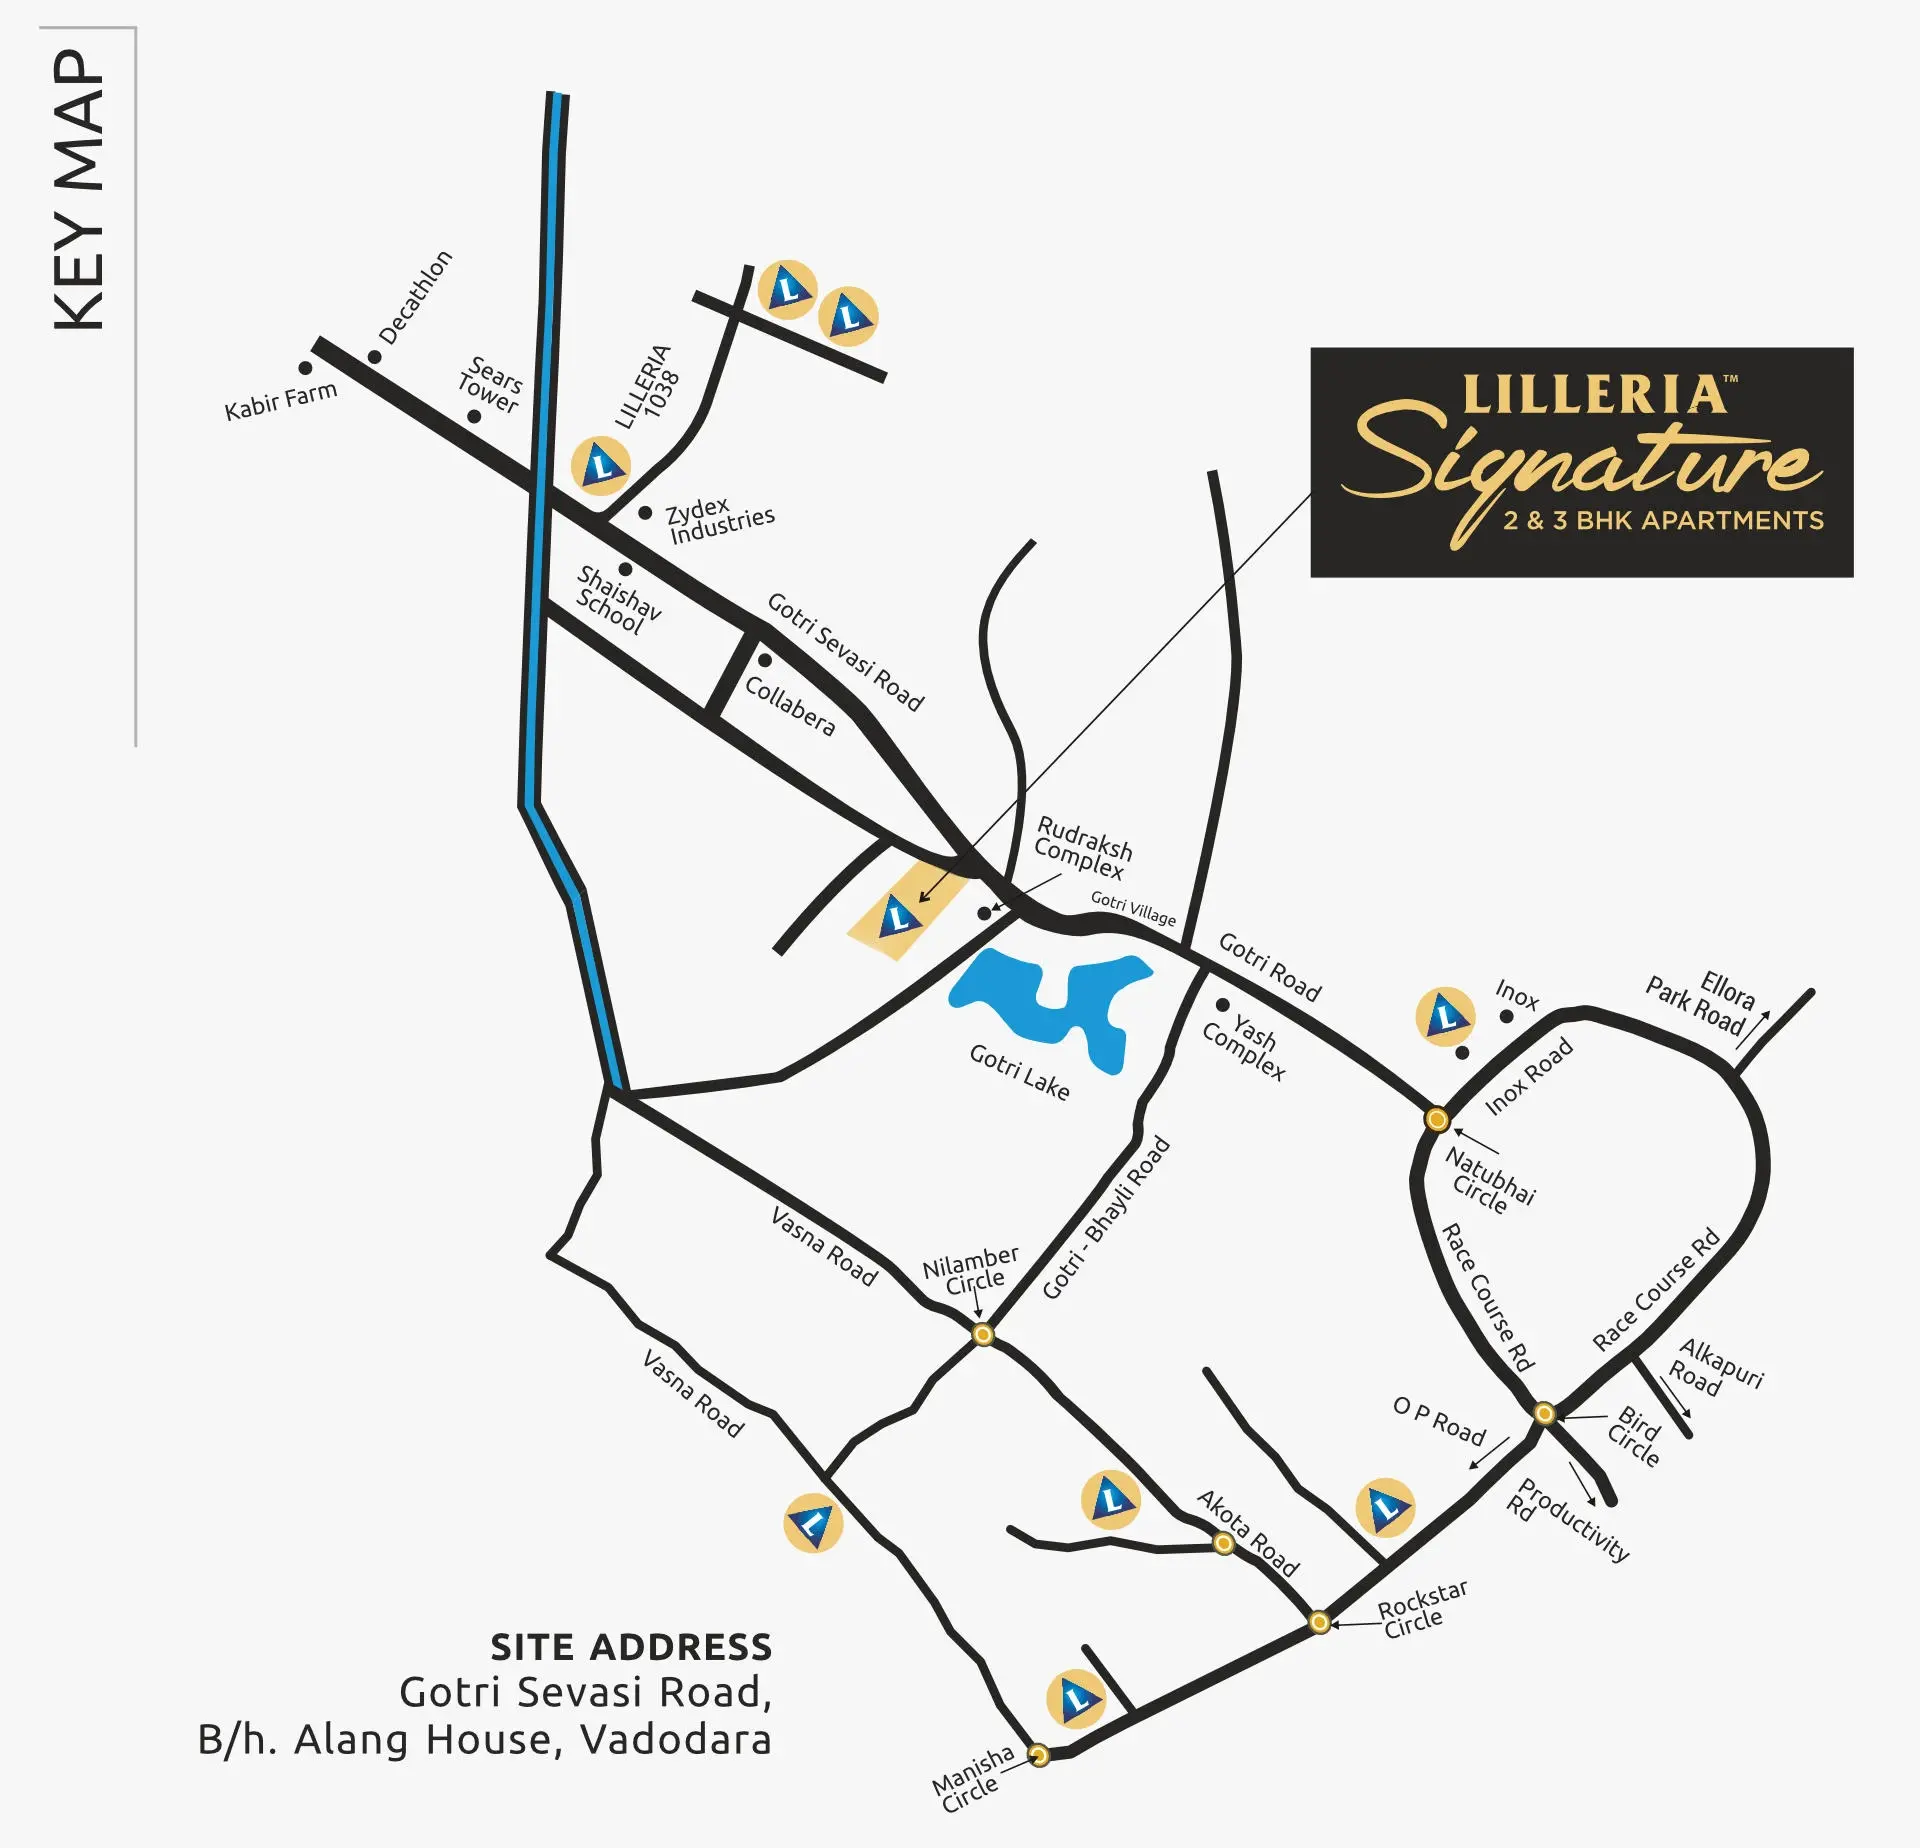 LILLERIA SIGNATURE - KEY MAP